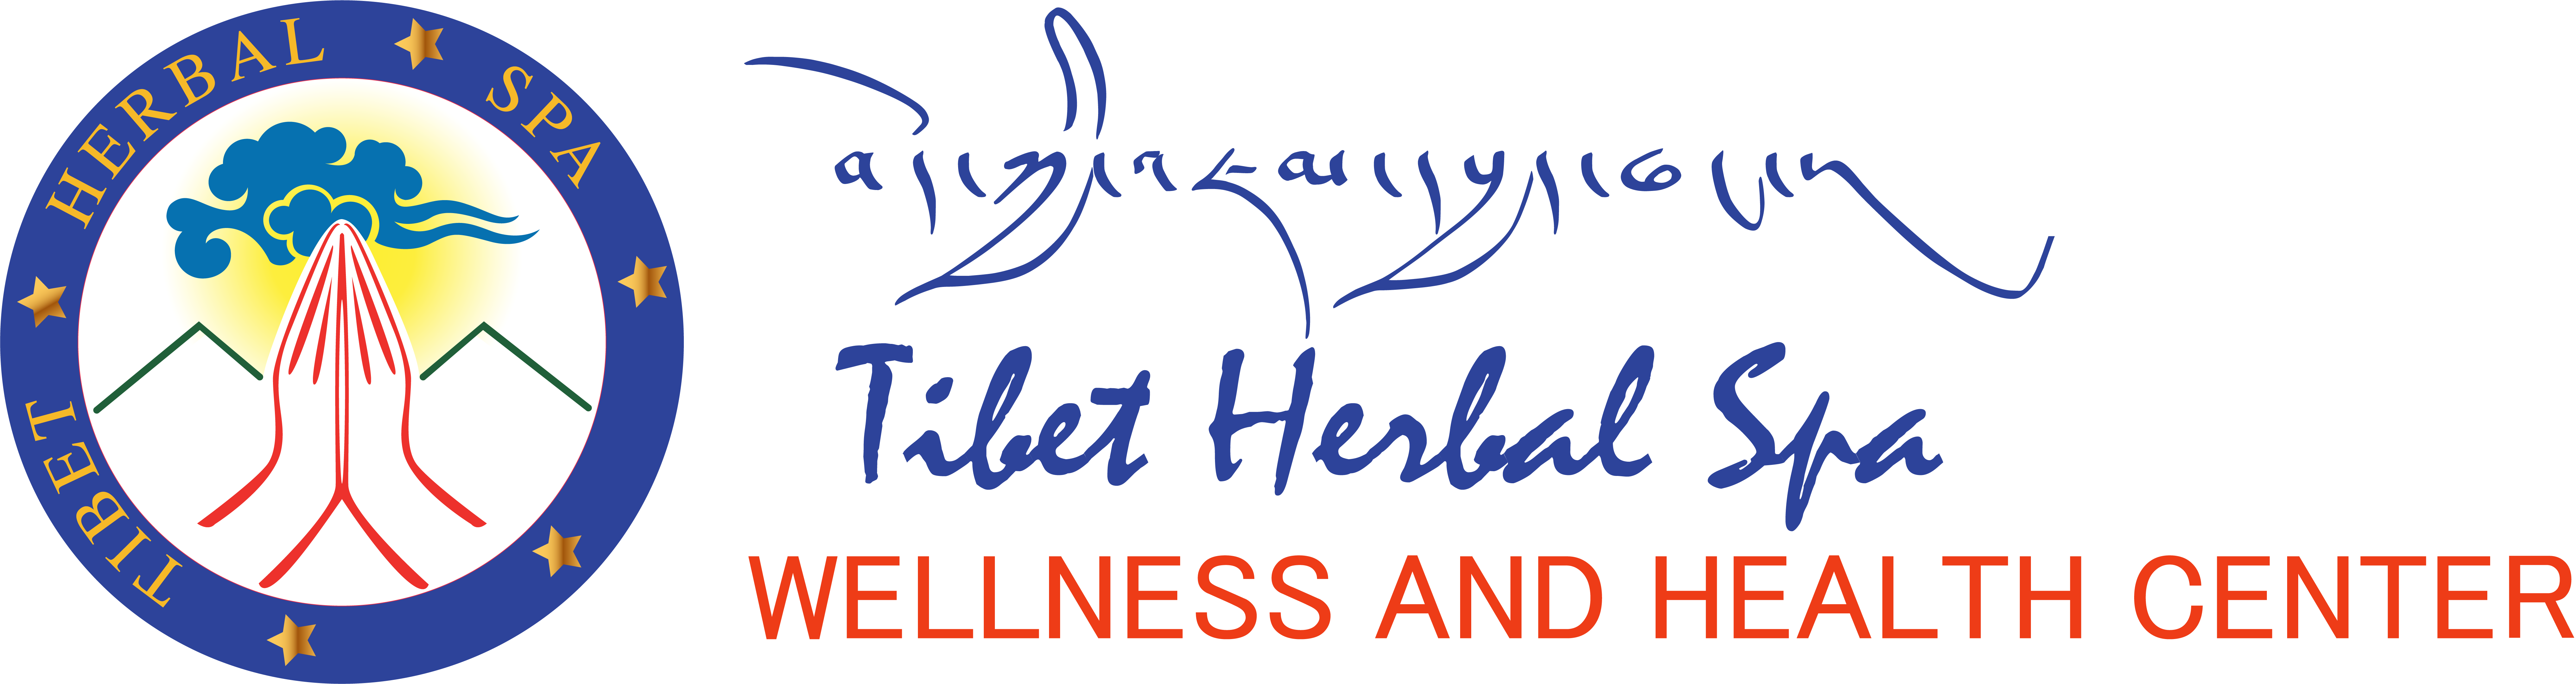 Tibet Herbal Spa